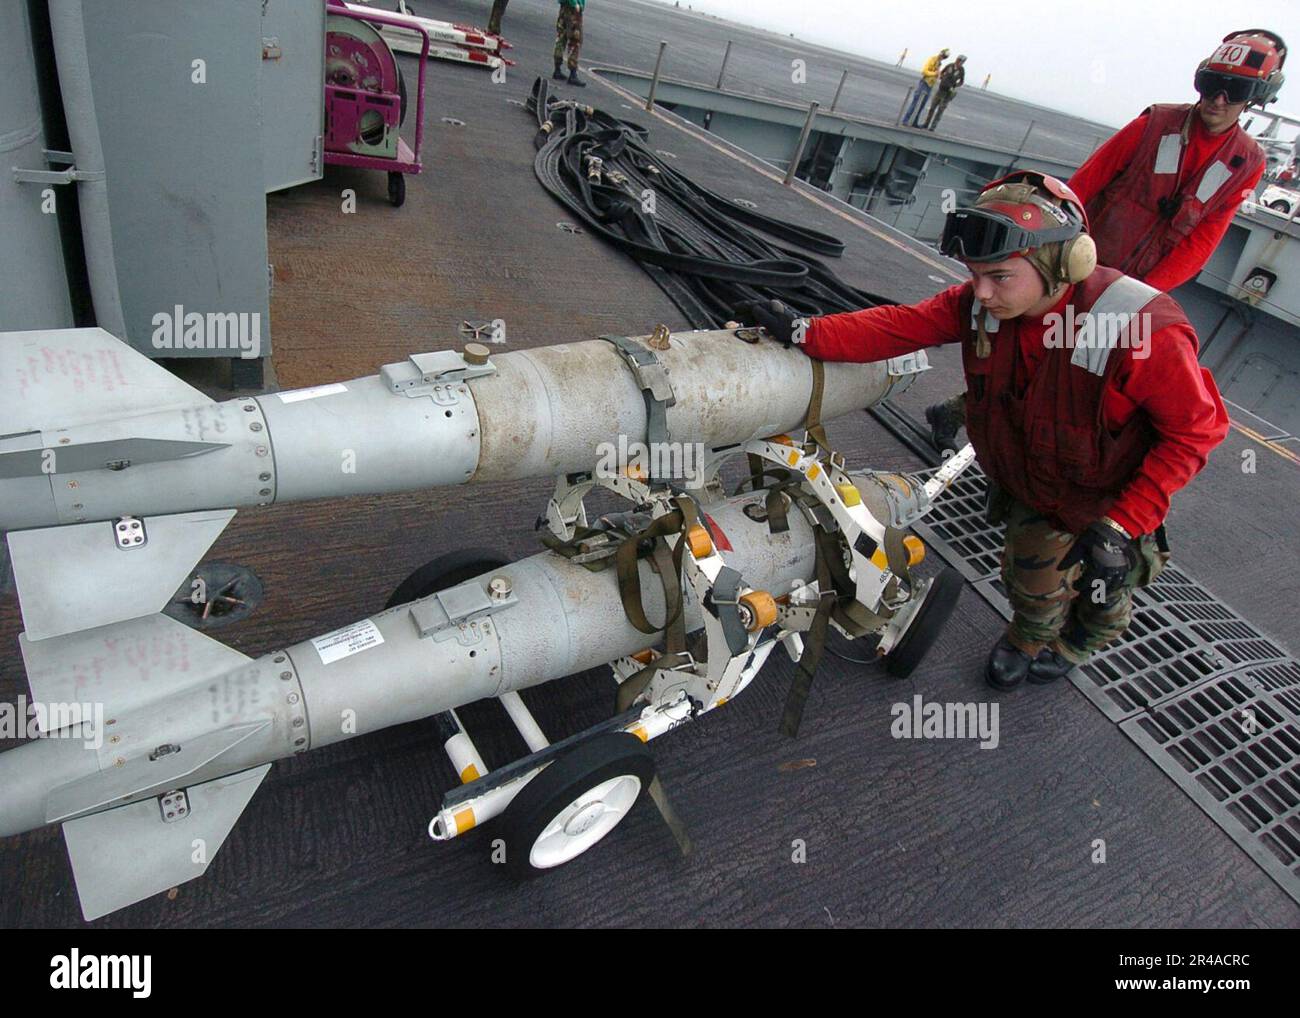 US Navy die GBU-38 ist eine 500 kg schwere Joint Direct Attack Munition (JDAM), die eine Standard-Mk-82-Bombe verwendet und für Präzisionsbomben in der städtischen Kriegsführung entwickelt wurde Stockfoto